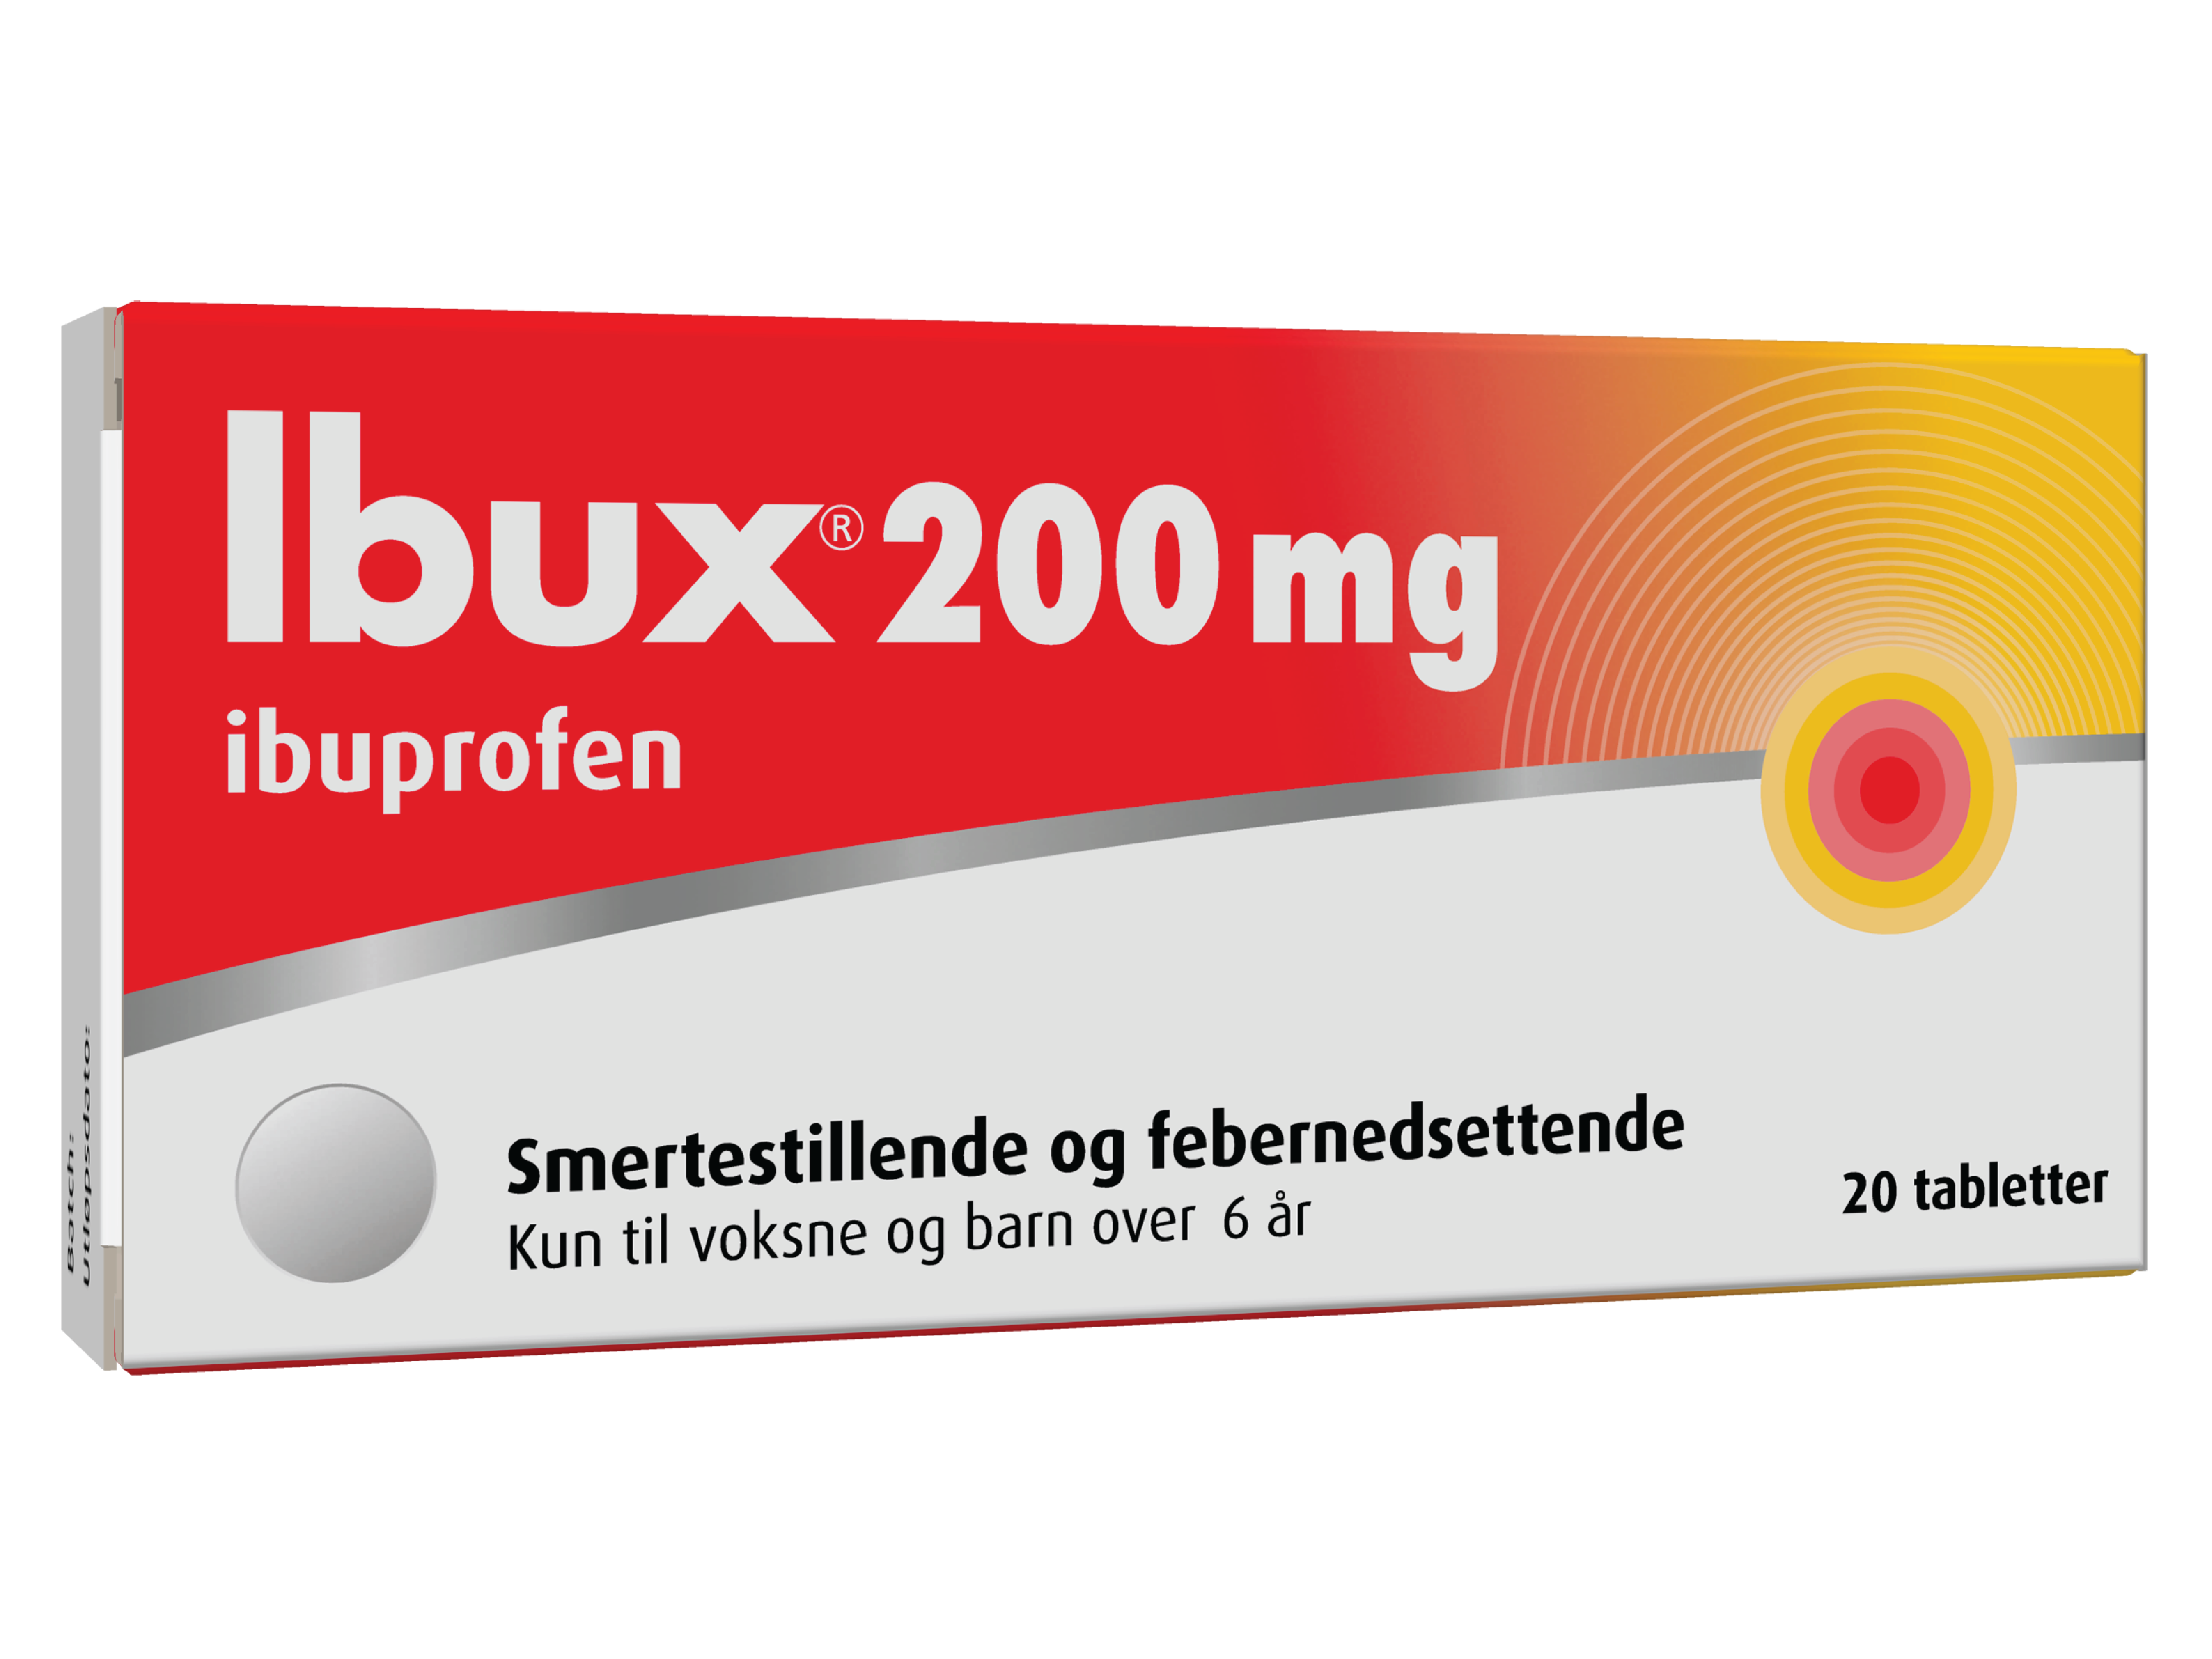 Ibux Tabletter 200 mg, 20 stk.